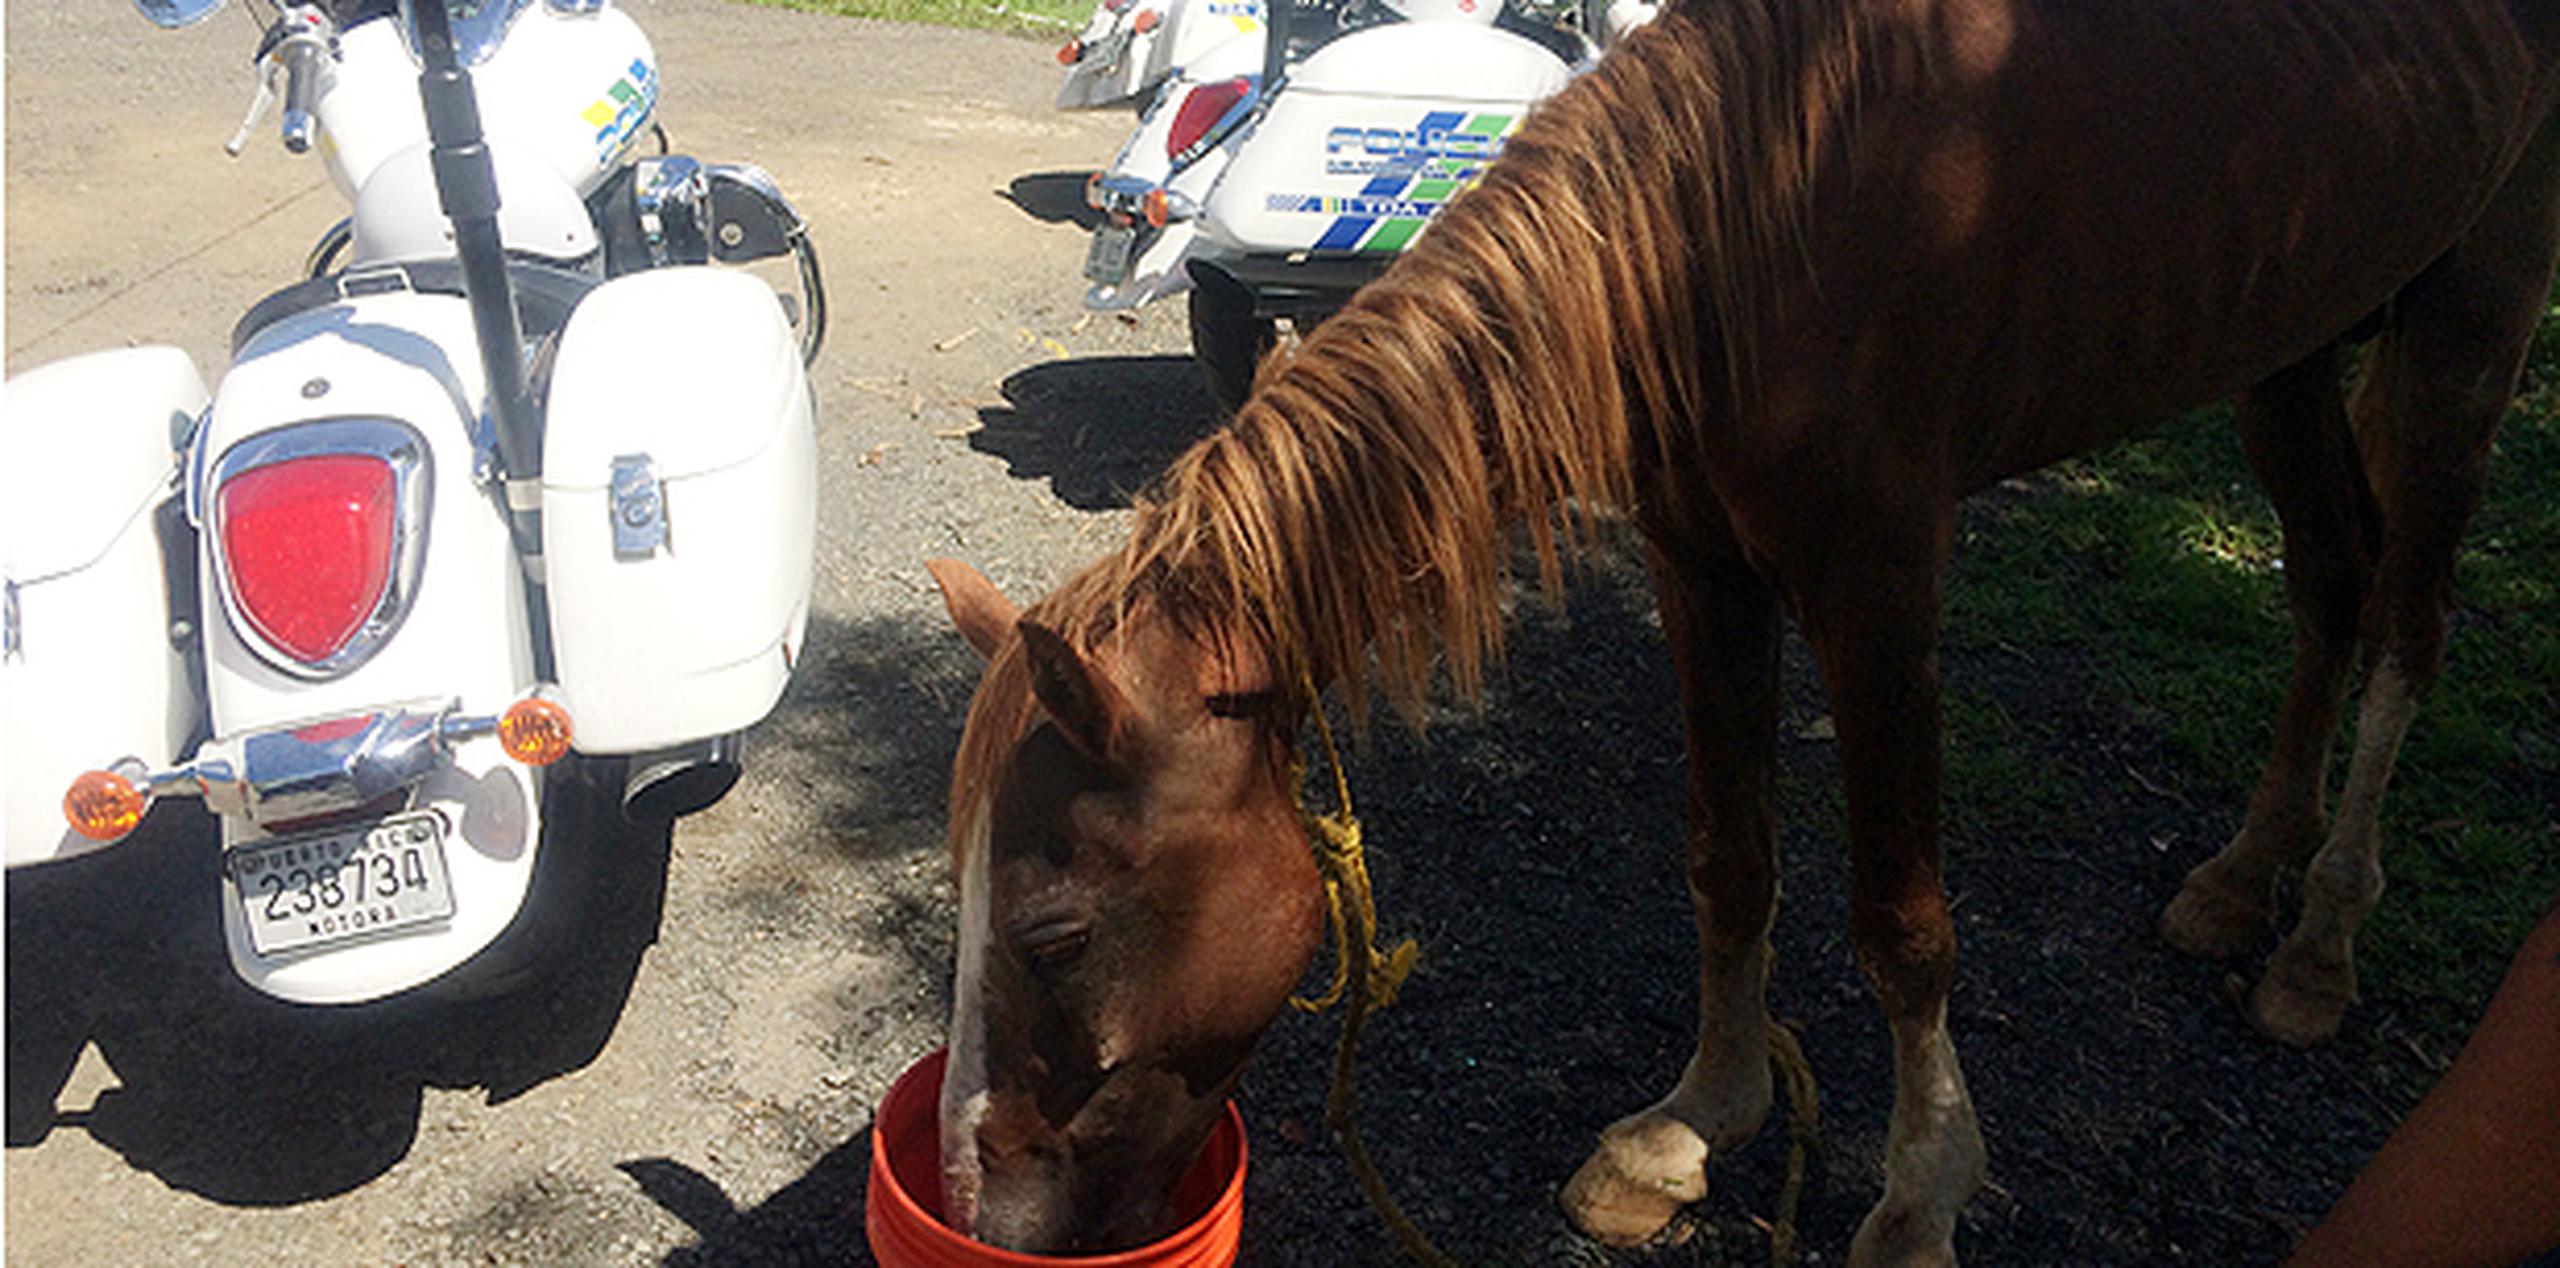 El caballo, que fue encontrado cerca de las 10:00 de la mañana, sería llevado a un veterinario. (Suministrada)